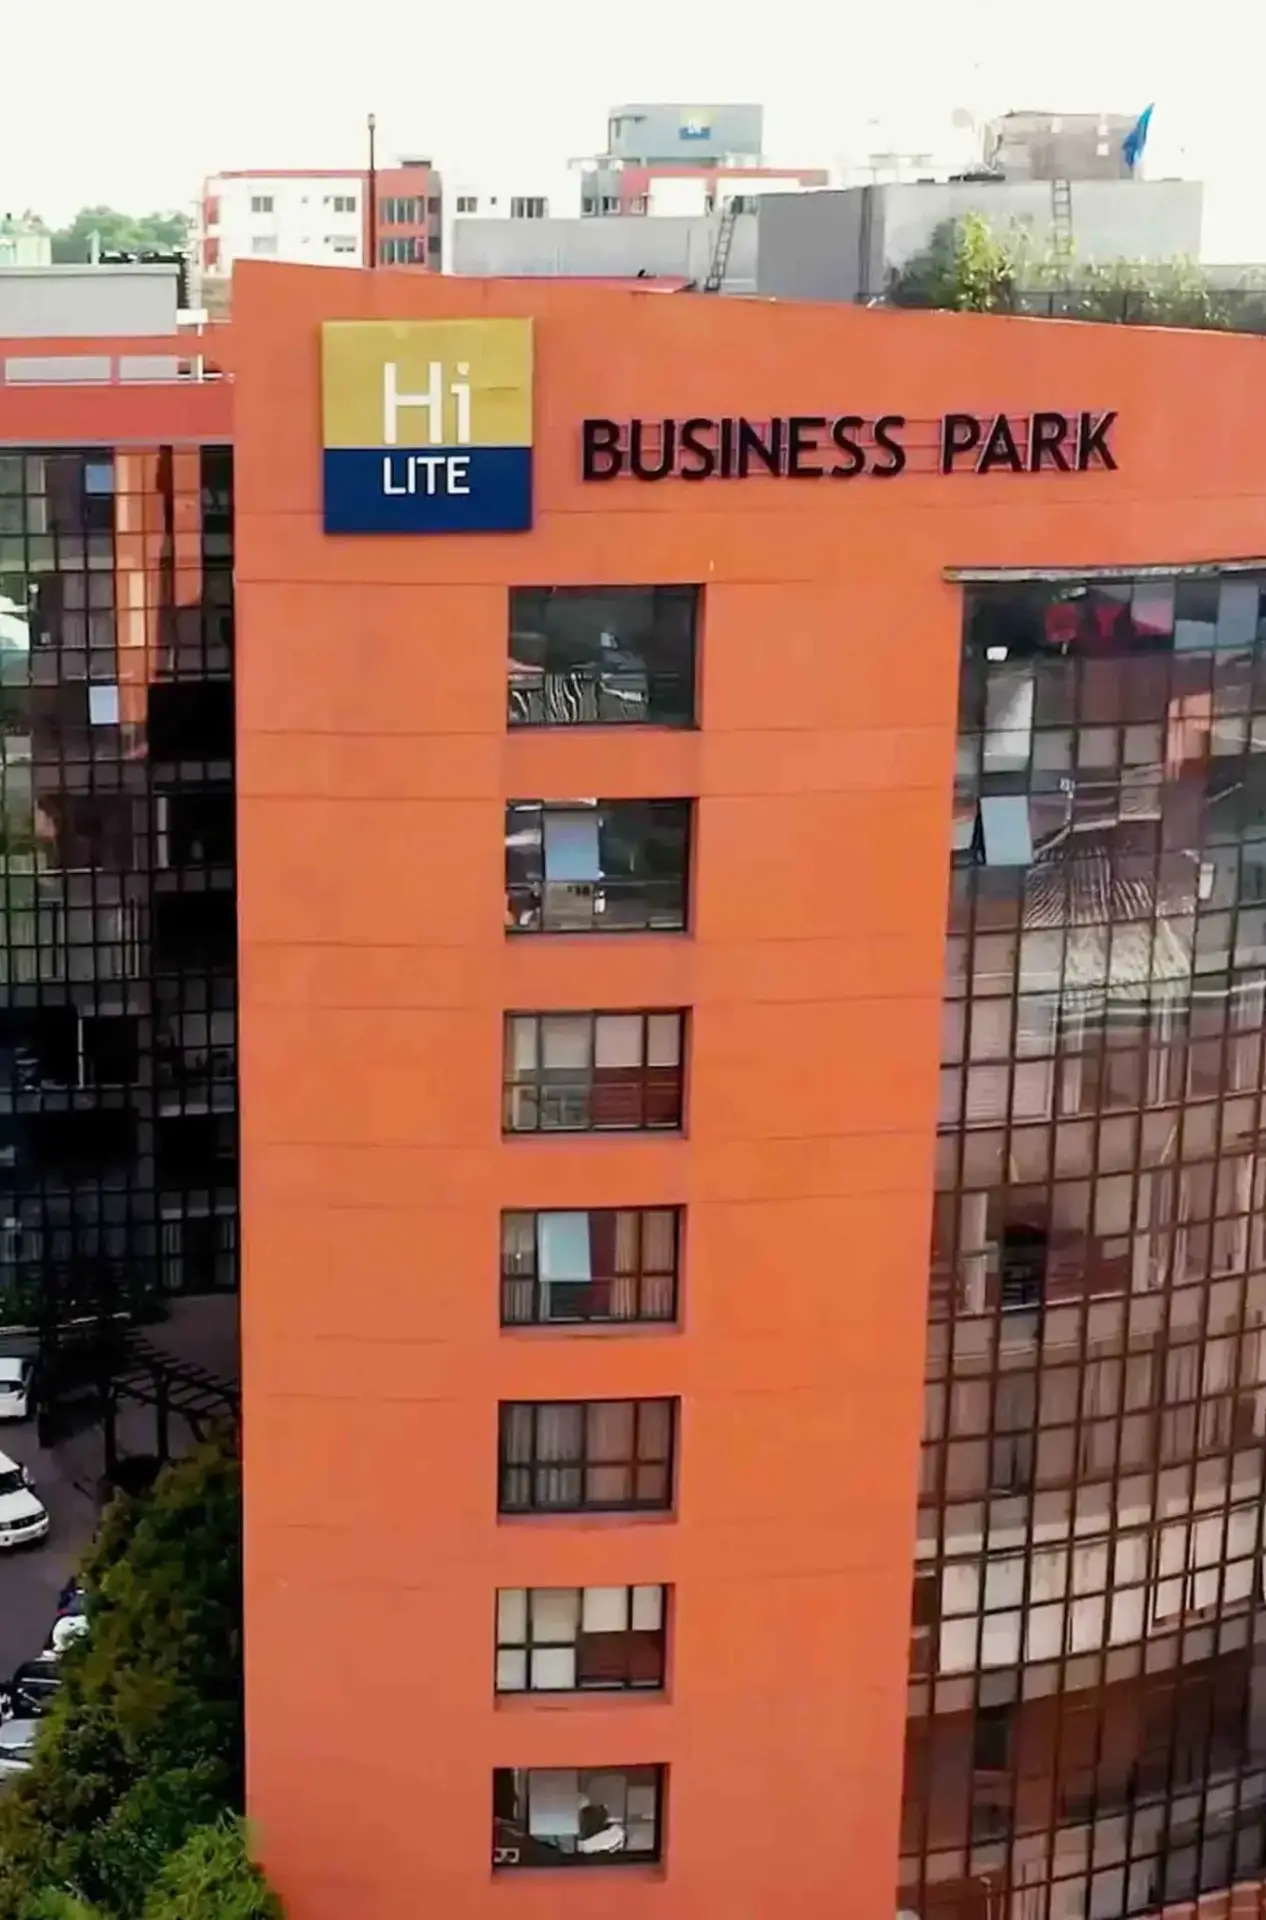 Hilite Business Park